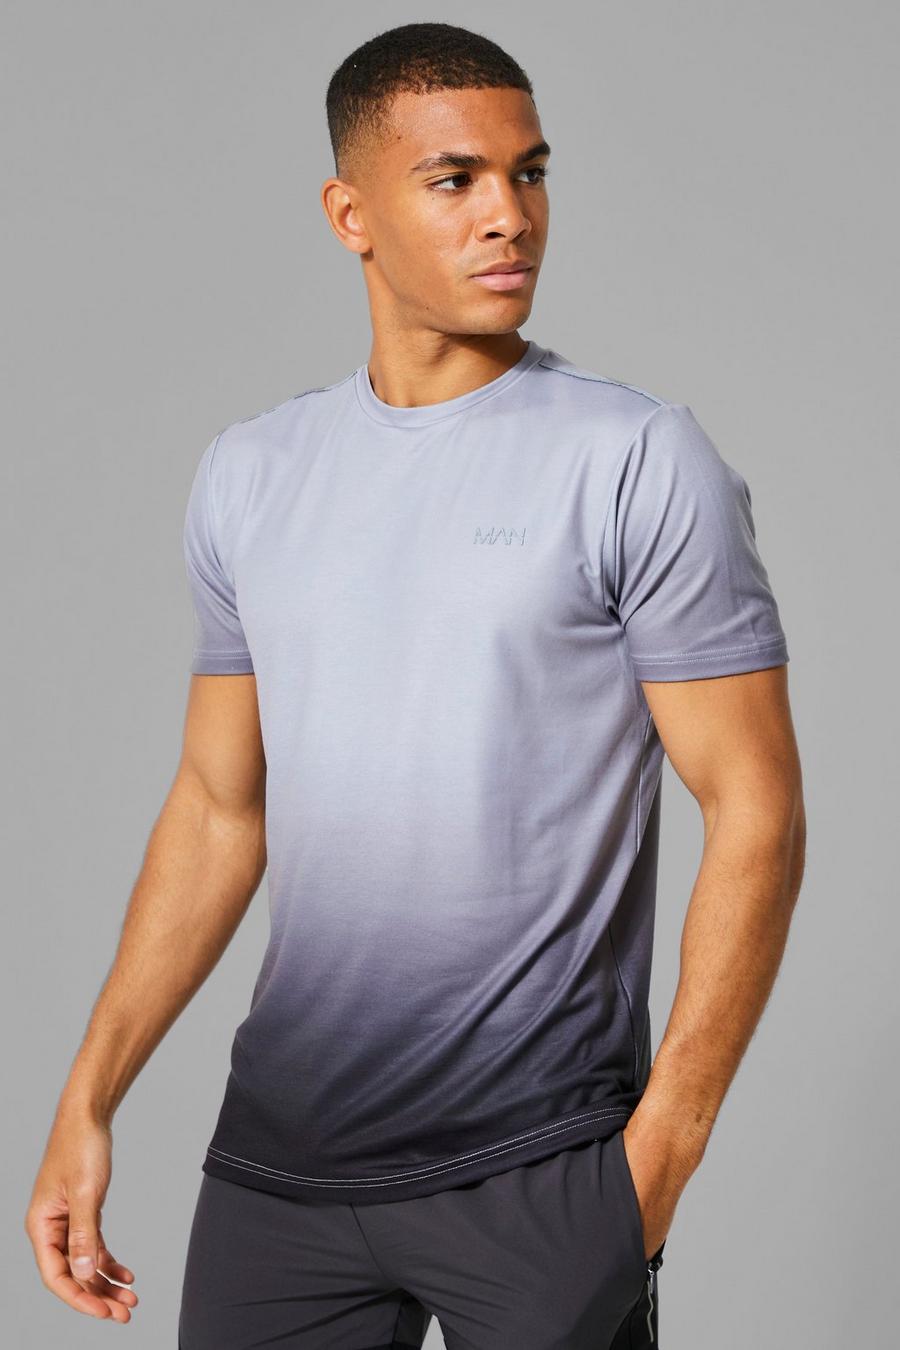 T-shirt Man Active con dettagli riflettenti e sfumati, Charcoal grigio